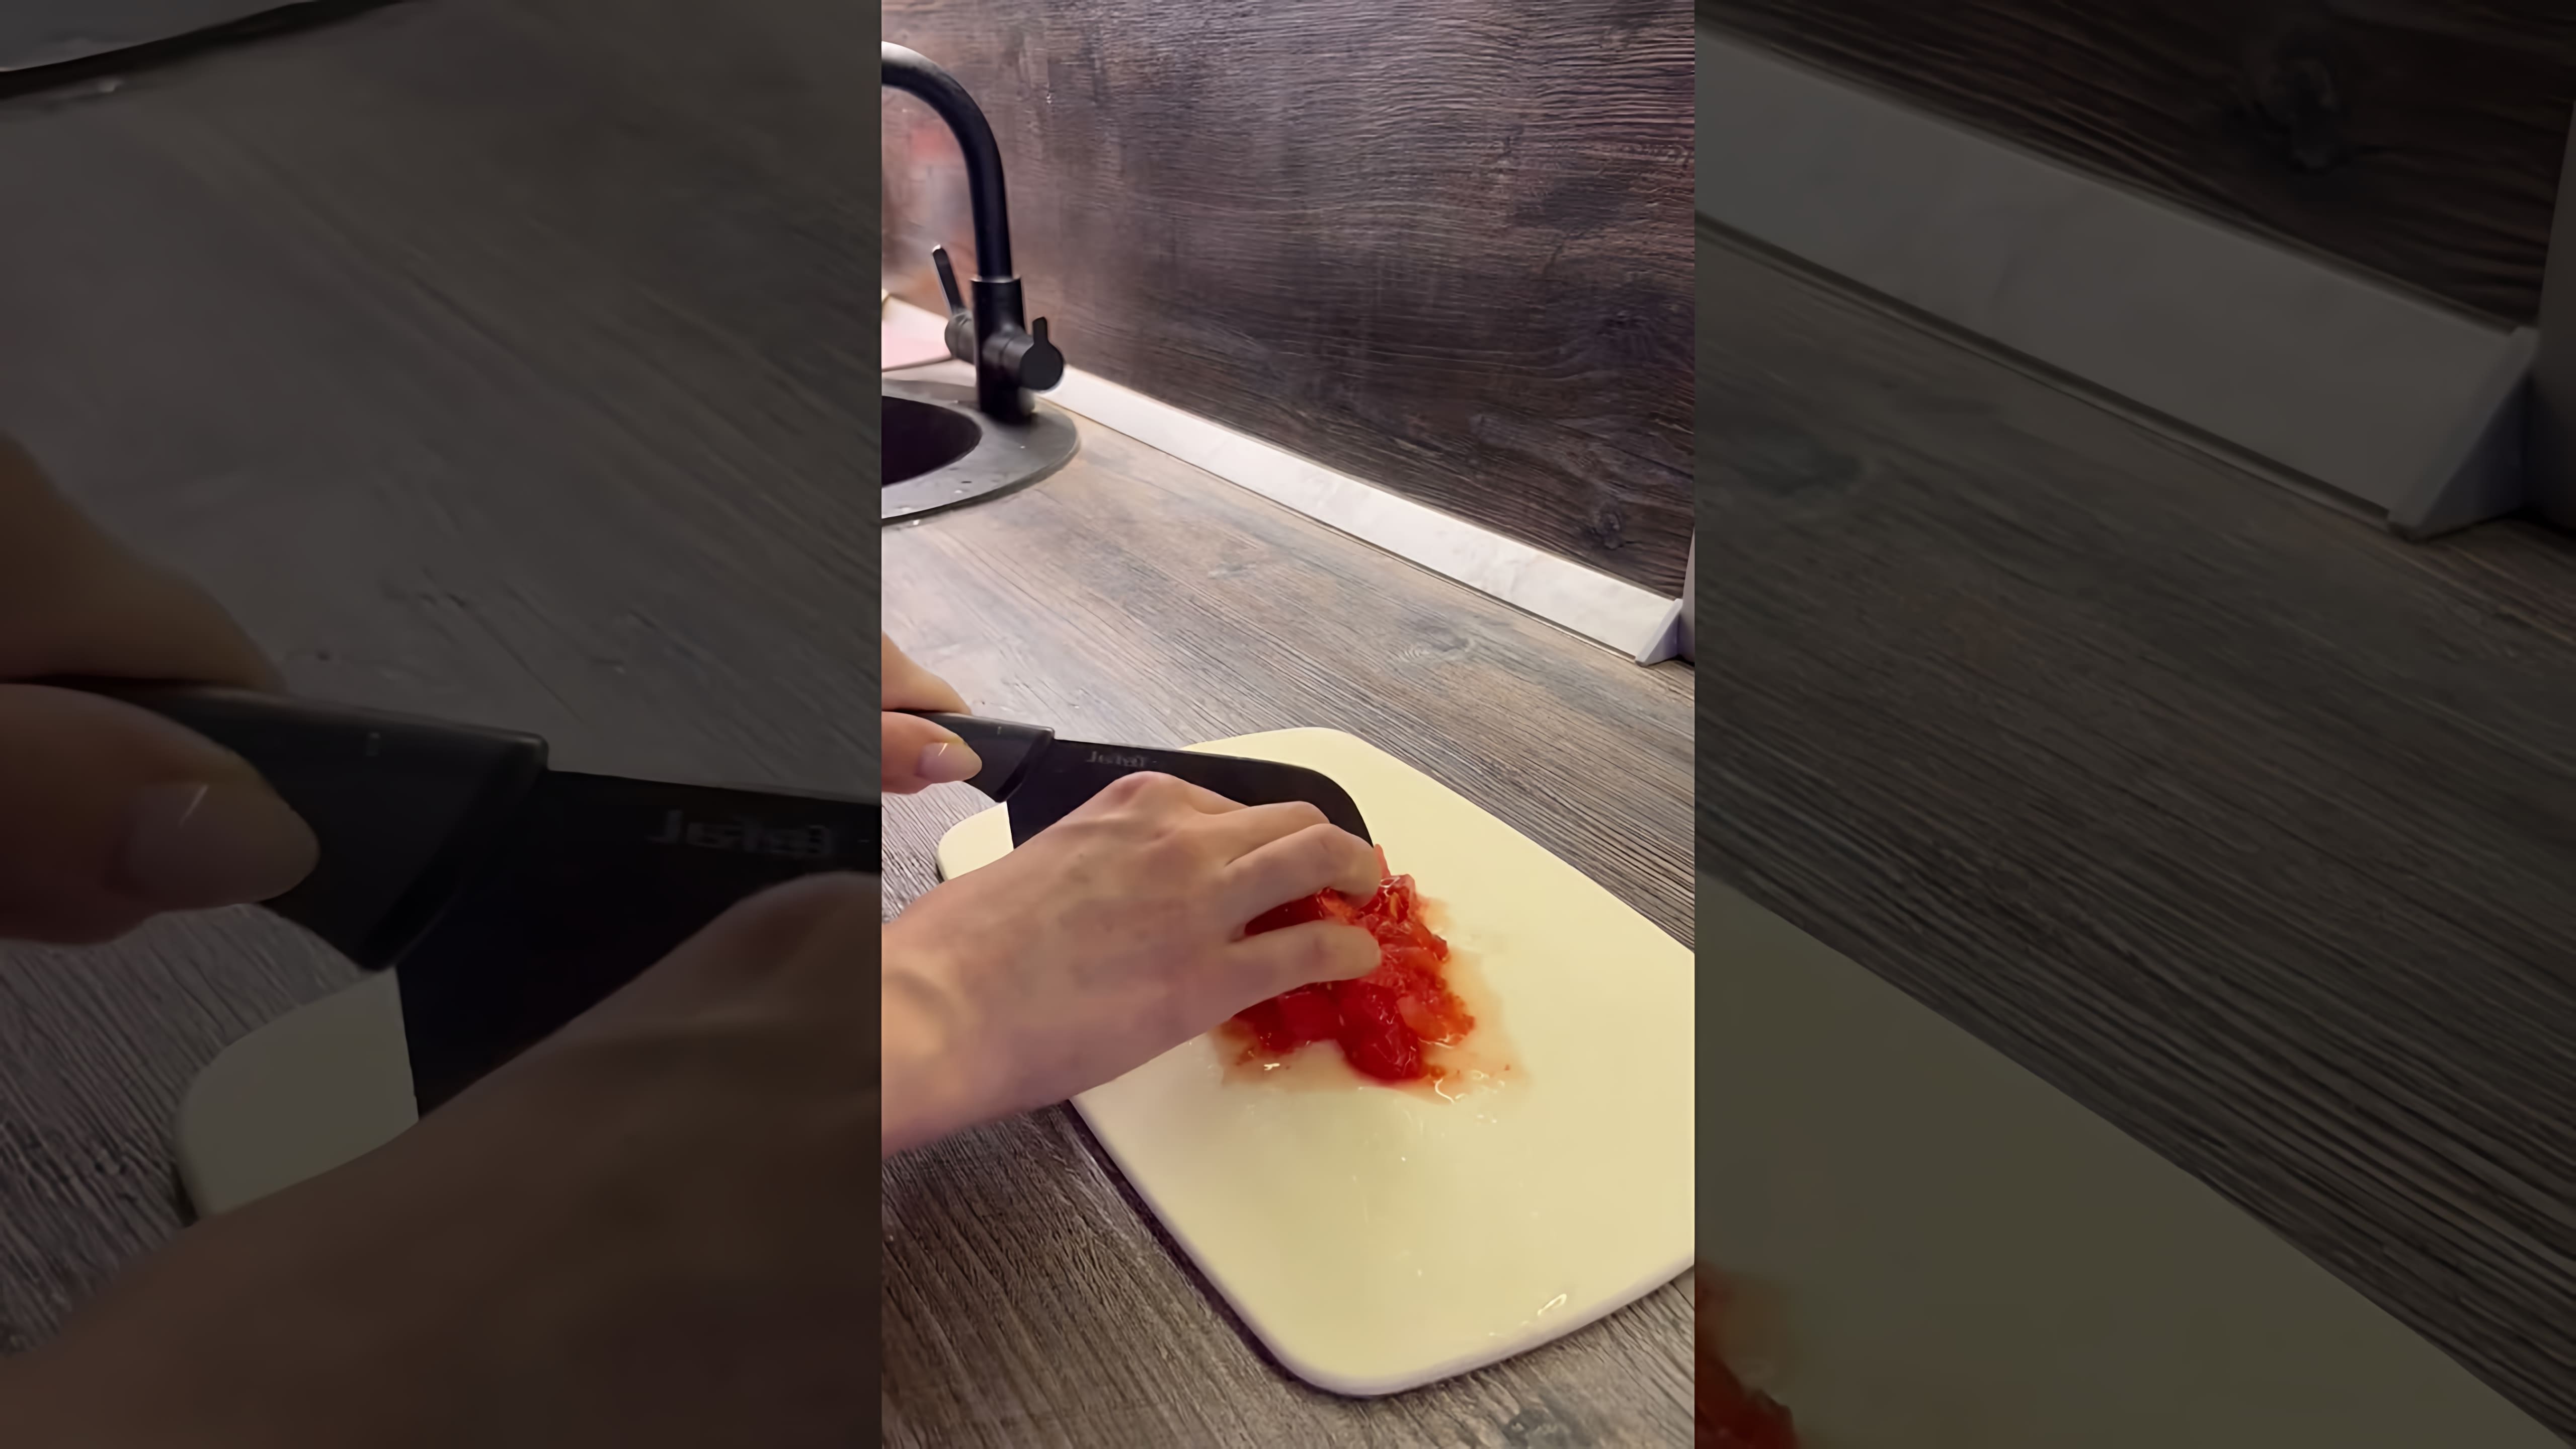 В этом видео демонстрируется рецепт приготовления пасты ризони с курицей